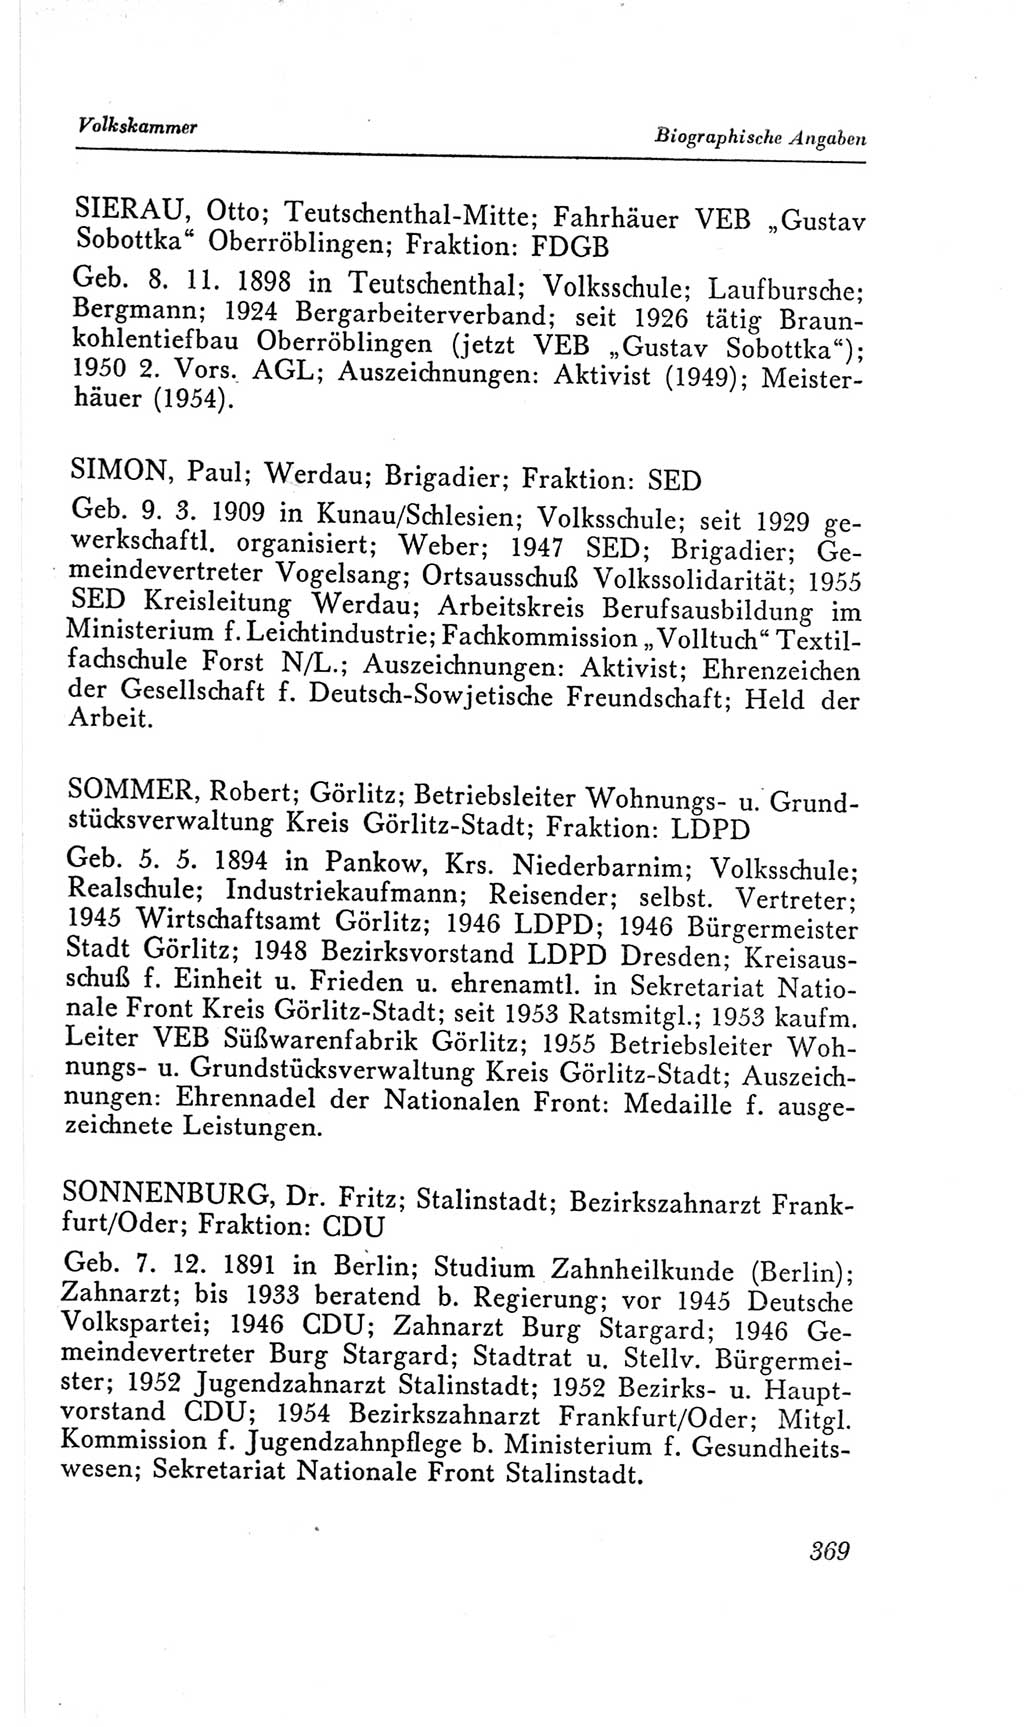 Handbuch der Volkskammer (VK) der Deutschen Demokratischen Republik (DDR), 2. Wahlperiode 1954-1958, Seite 369 (Hdb. VK. DDR, 2. WP. 1954-1958, S. 369)